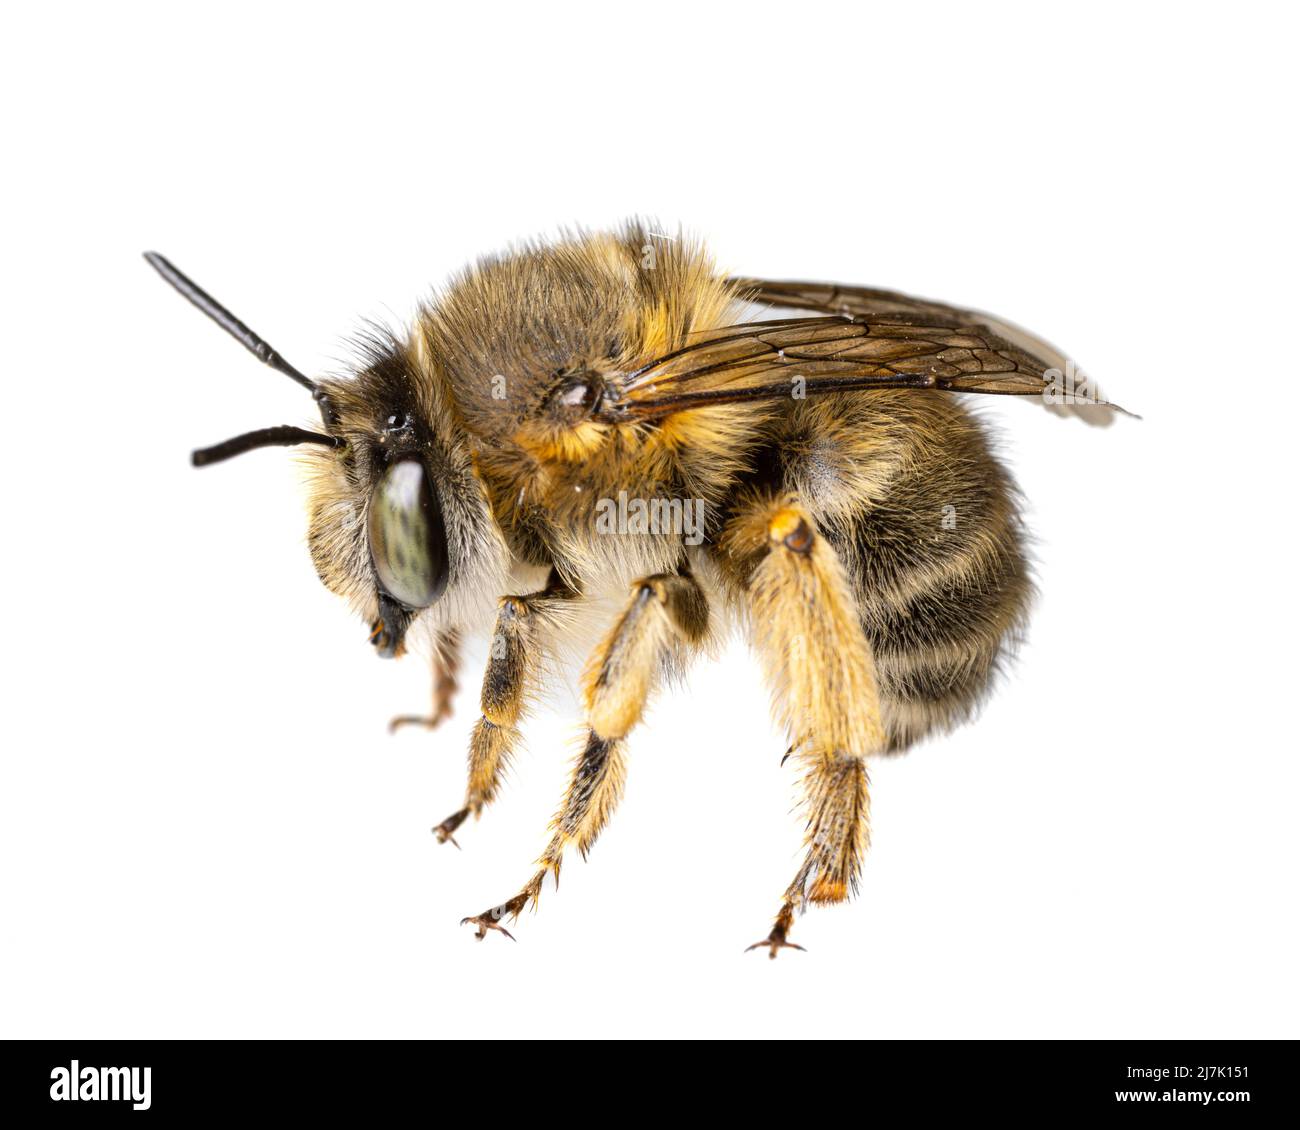 Insectes d'europe - abeilles: Macro de femelles Anthophora crinipes (Pelzbienen) isolé sur fond blanc - détails des jambes Banque D'Images